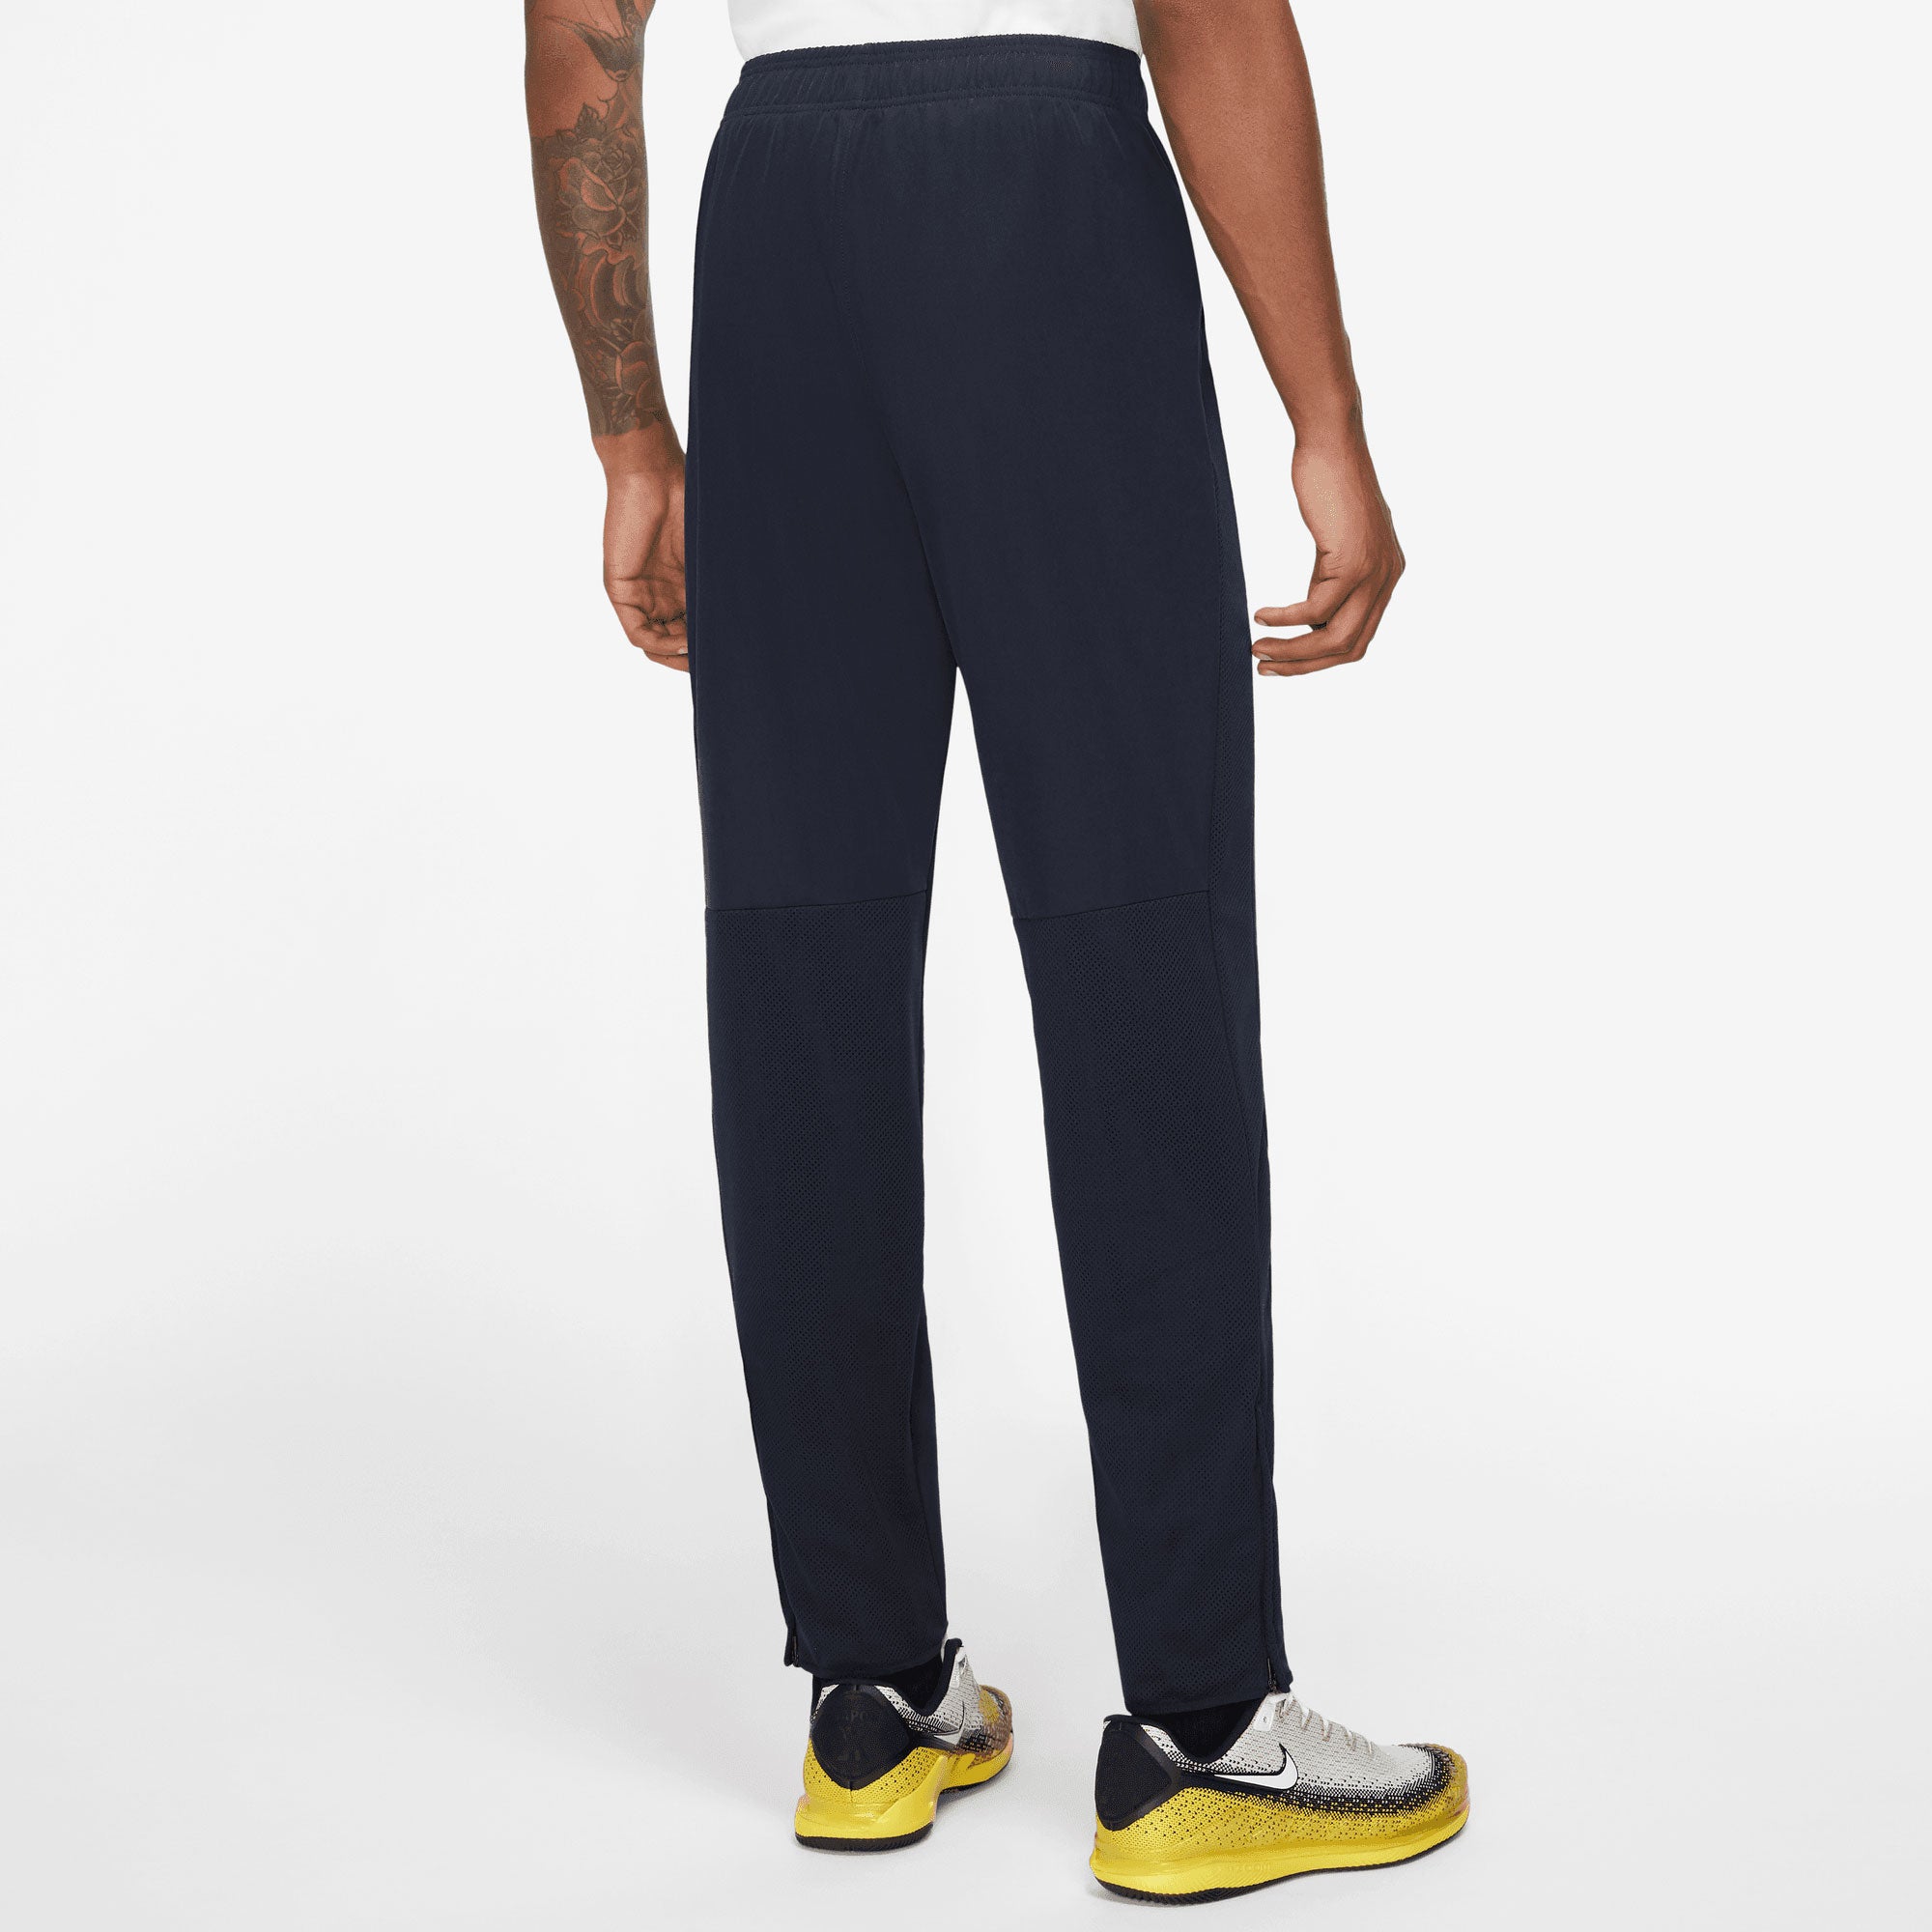 NikeCourt Advantage Men's Tennis Pants Blue (2)